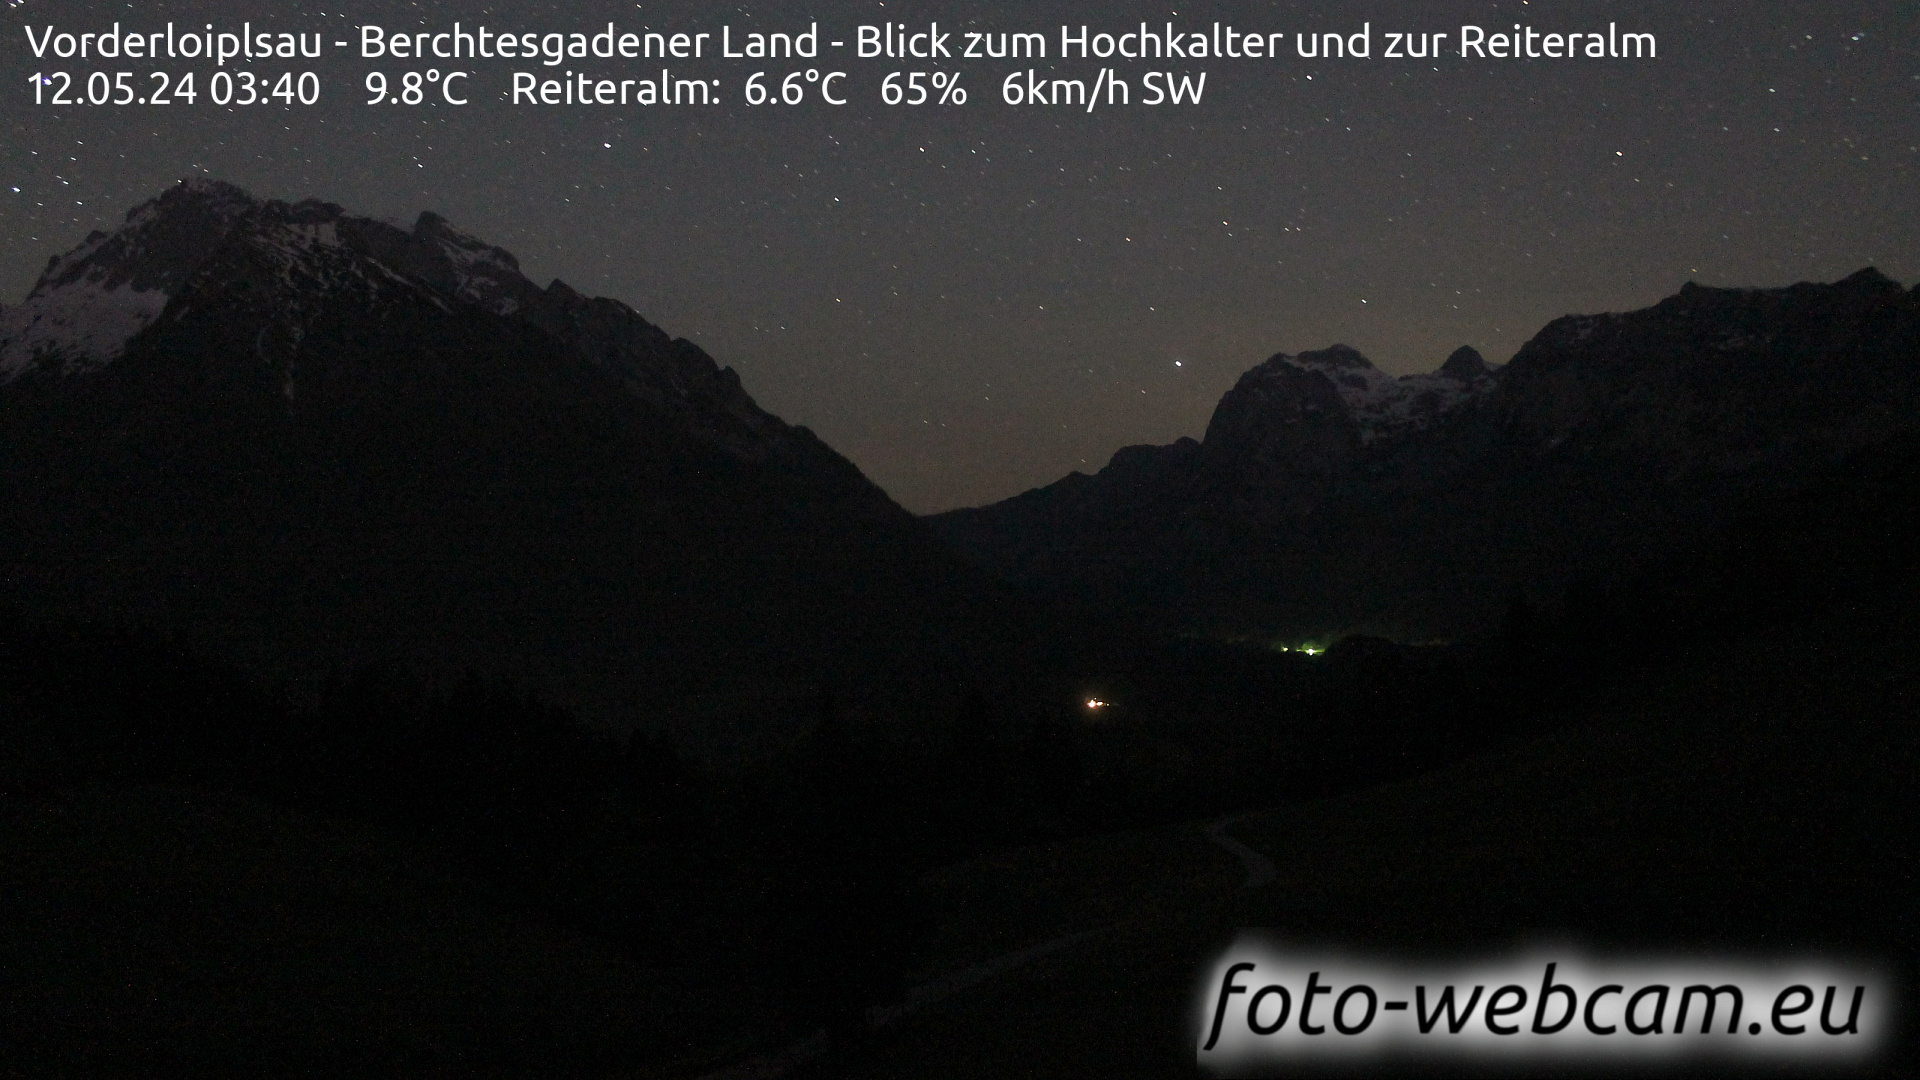 Ramsau bei Berchtesgaden Tor. 03:48